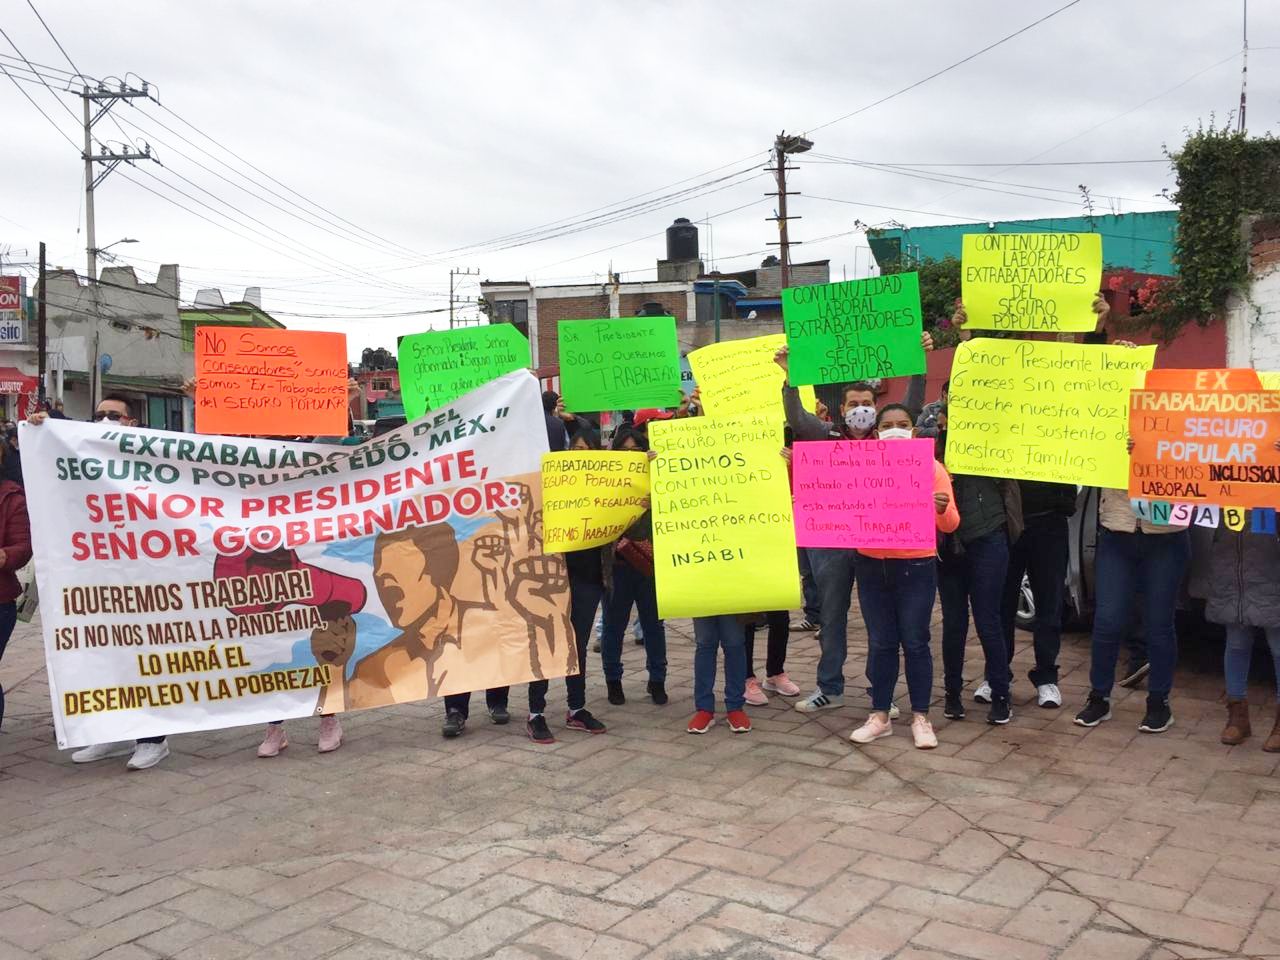 Extrabajadores del Seguro Popular realizan manifestacion ante la visita de AMLO a Texcoco 